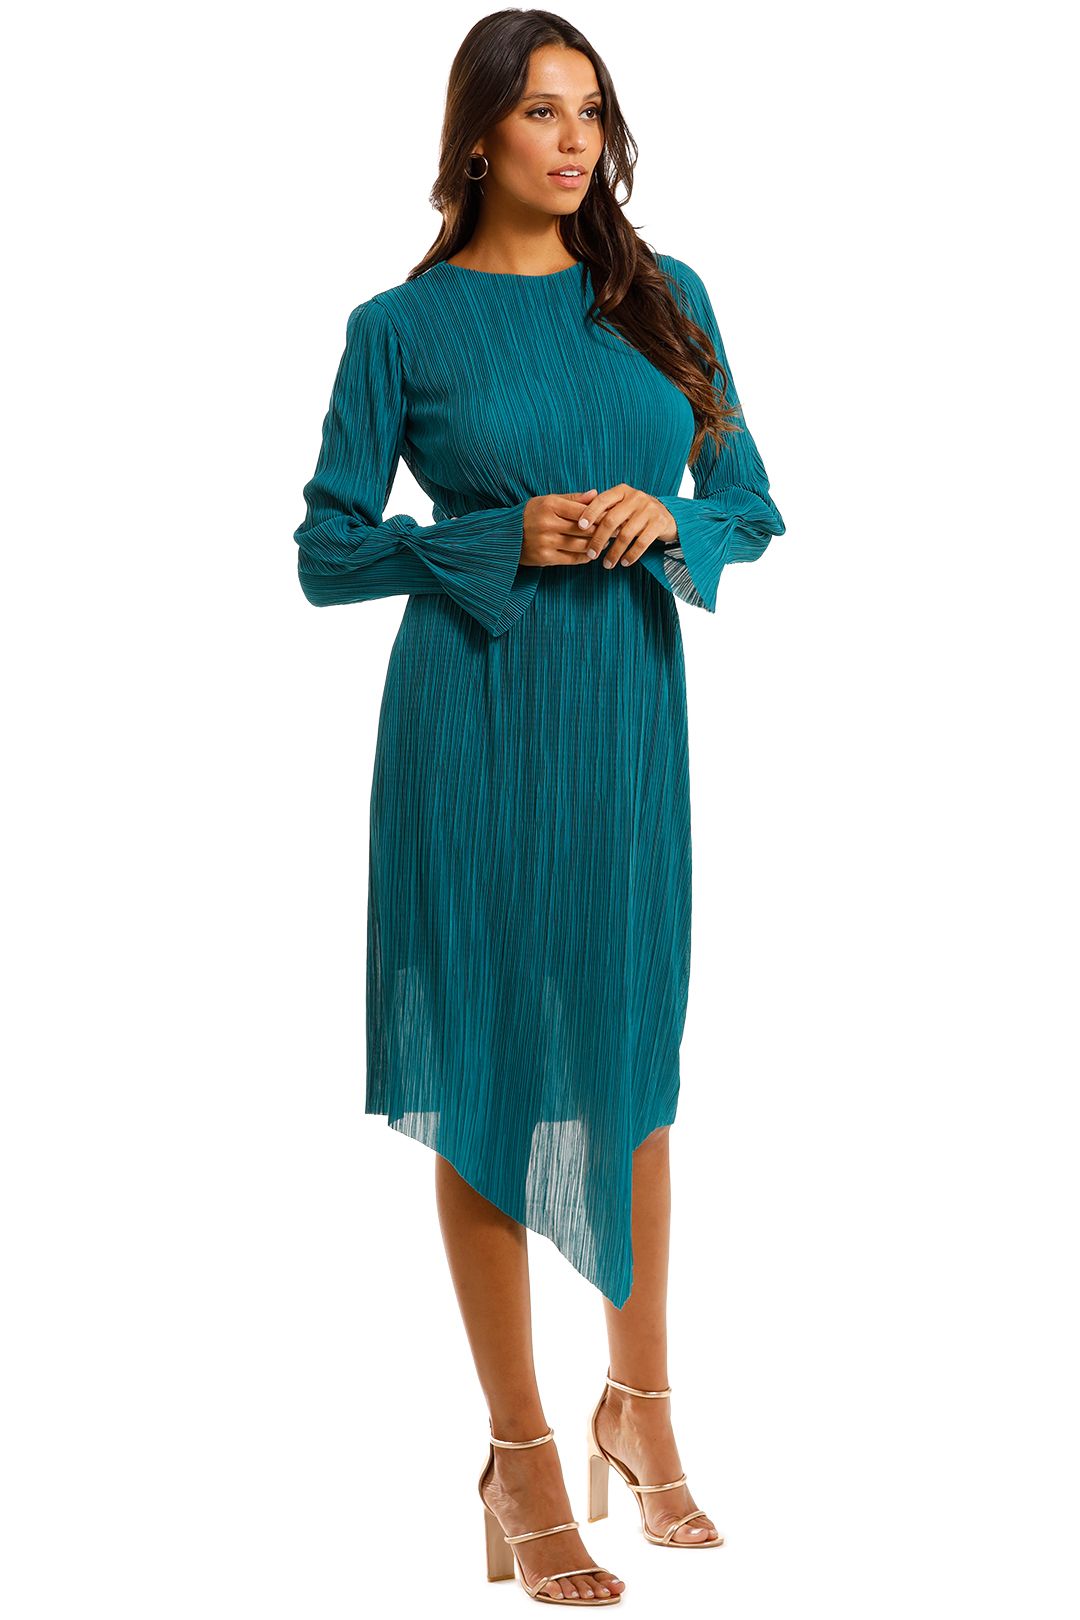 Willow Pleat Cut Away Dress Blue Asymmetrical Skirt